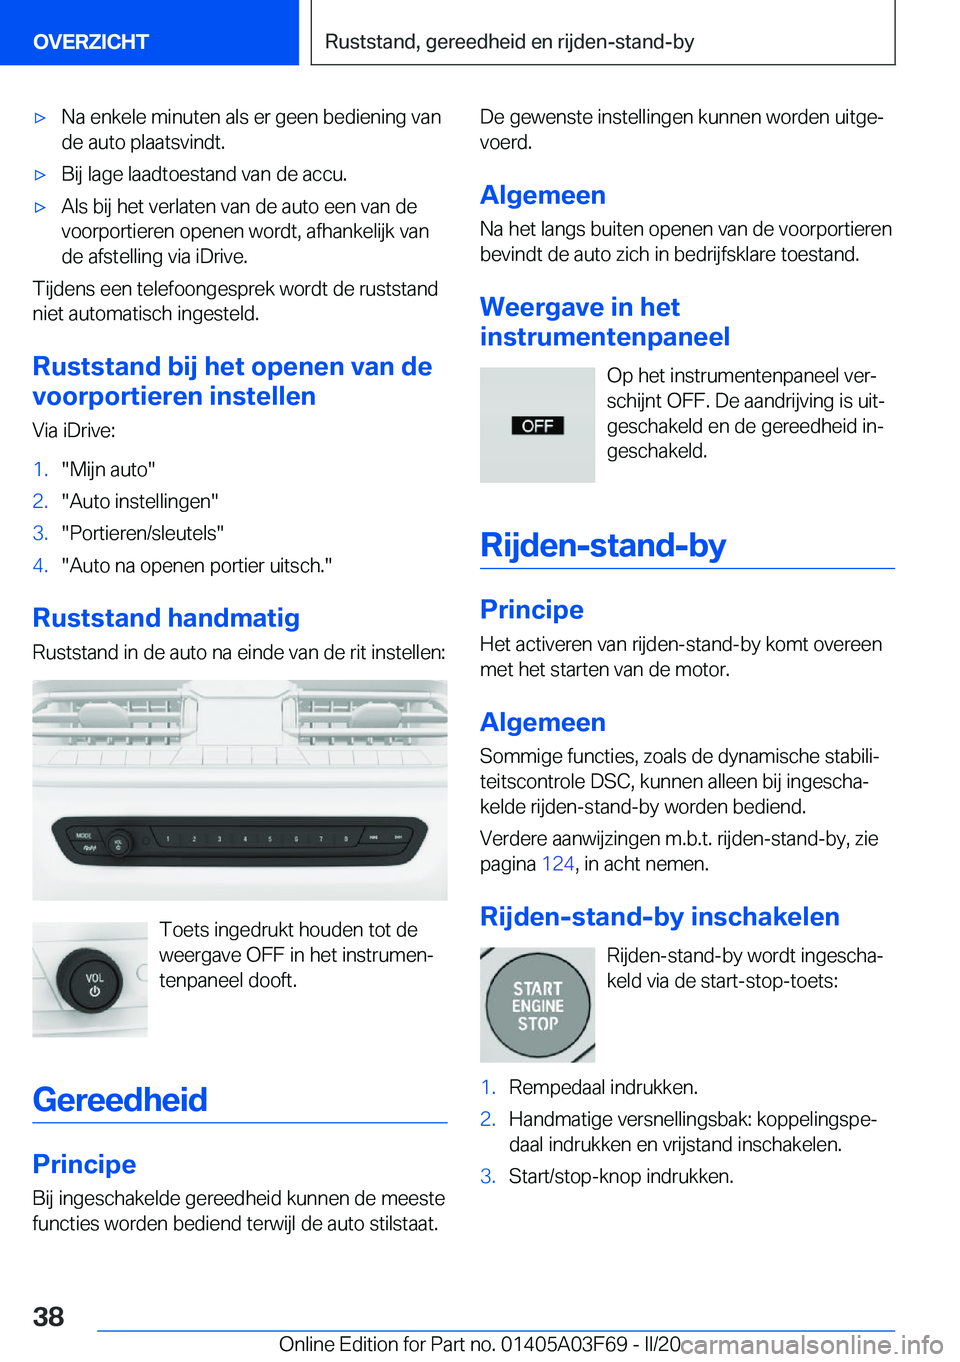 BMW 3 SERIES 2020  Instructieboekjes (in Dutch) 'x�N�a��e�n�k�e�l�e��m�i�n�u�t�e�n��a�l�s��e�r��g�e�e�n��b�e�d�i�e�n�i�n�g��v�a�n�d�e��a�u�t�o��p�l�a�a�t�s�v�i�n�d�t�.'x�B�i�j��l�a�g�e��l�a�a�d�t�o�e�s�t�a�n�d��v�a�n��d�e��a�c